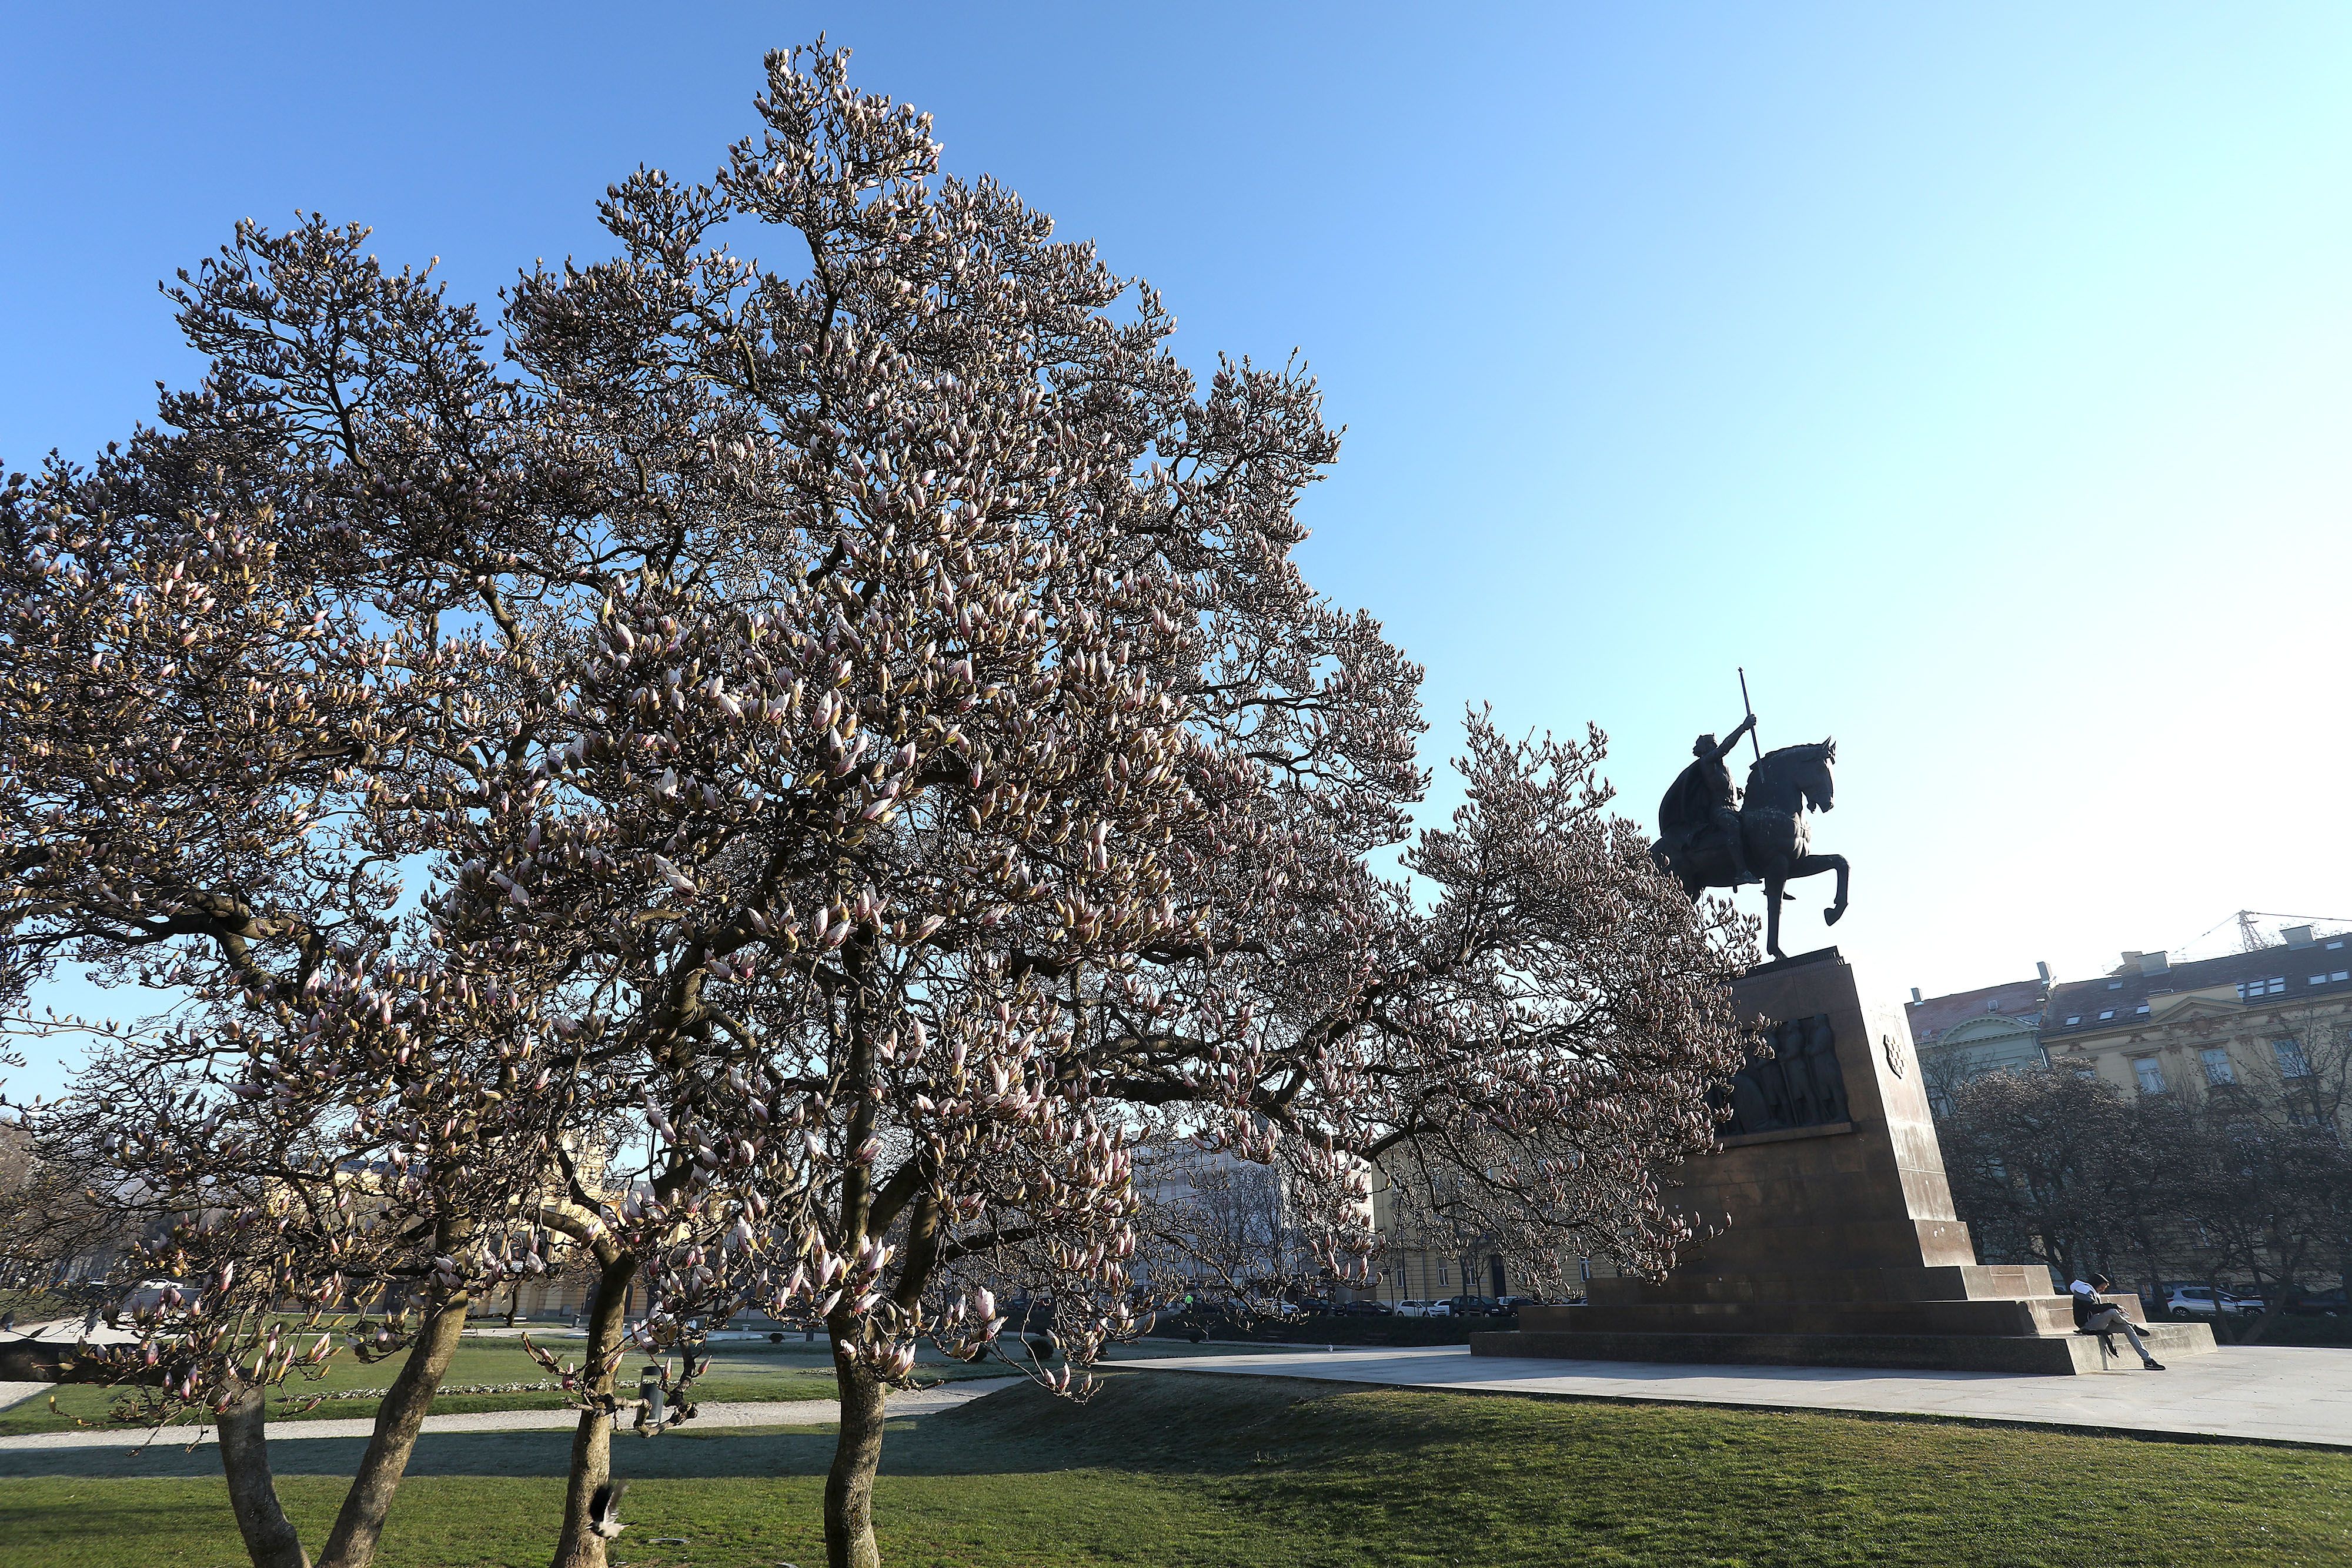 Tomislavac uskoro postaje mjesto najljepših fotki na Instagramu: Cvate magnolija, najpopularnije drvo u Zagrebu